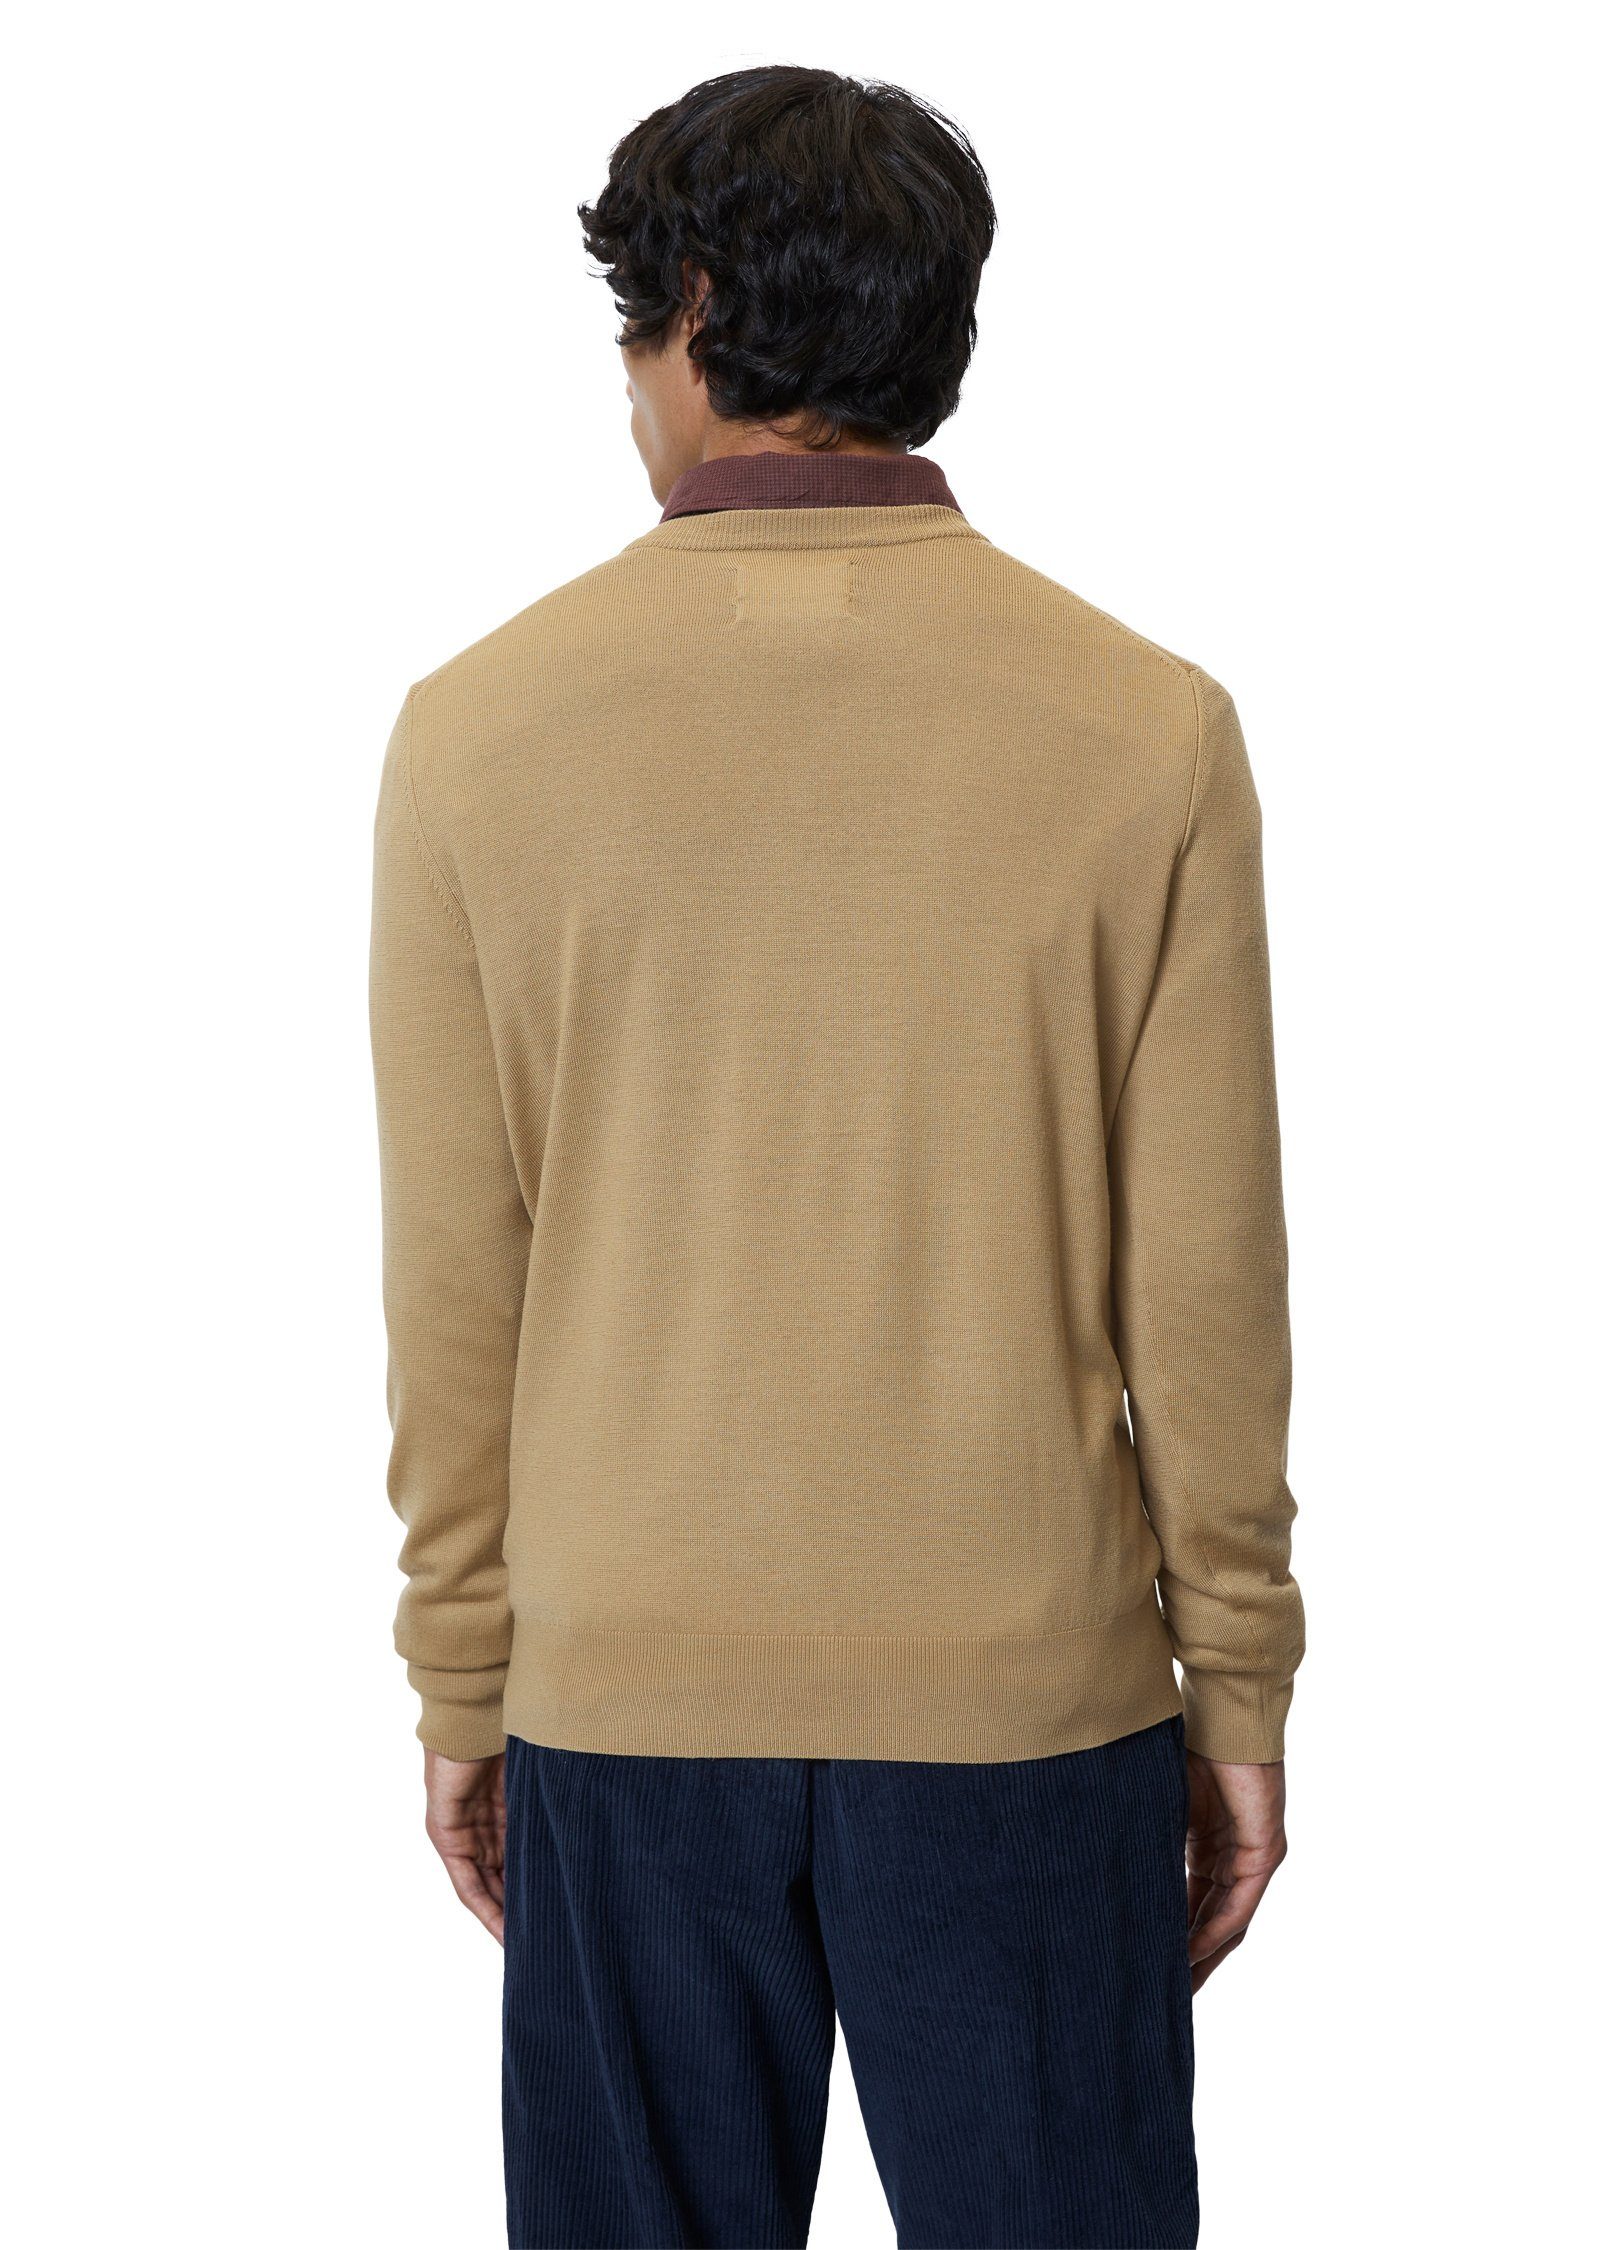 braun und softer O'Polo V-Ausschnitt-Pullover leichter Merino-Qualität Marc aus